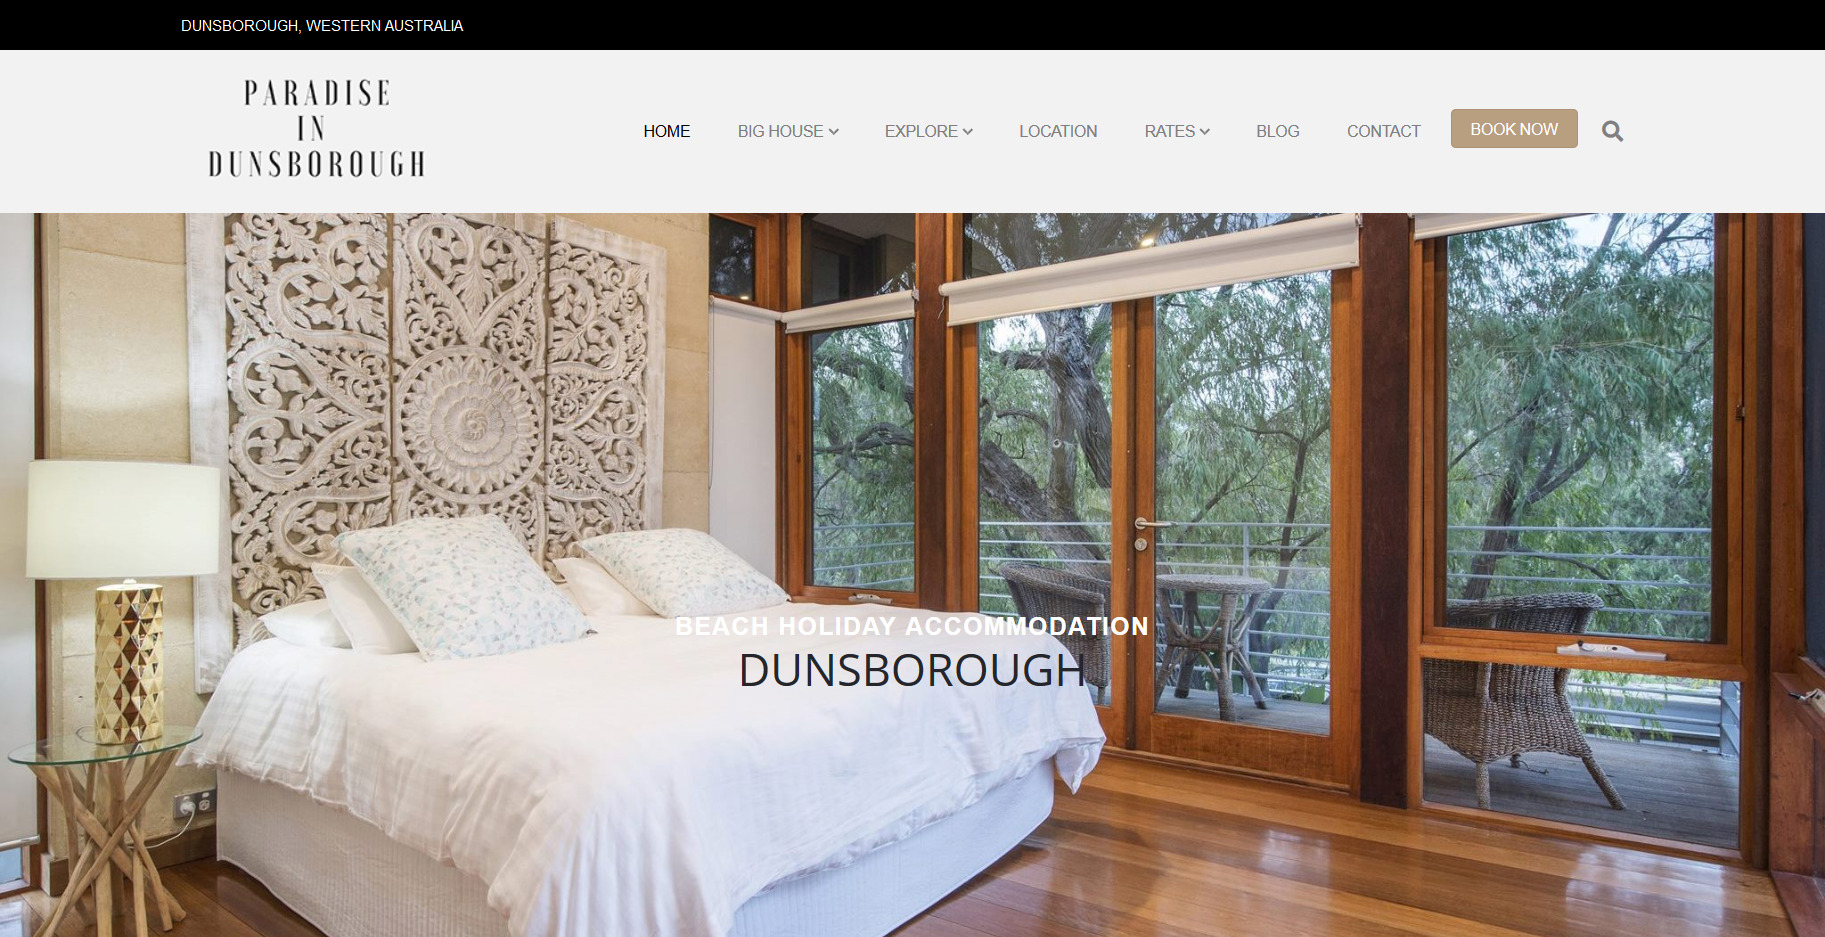 web designer perth Accommodation Accommodation Dunsborough WA